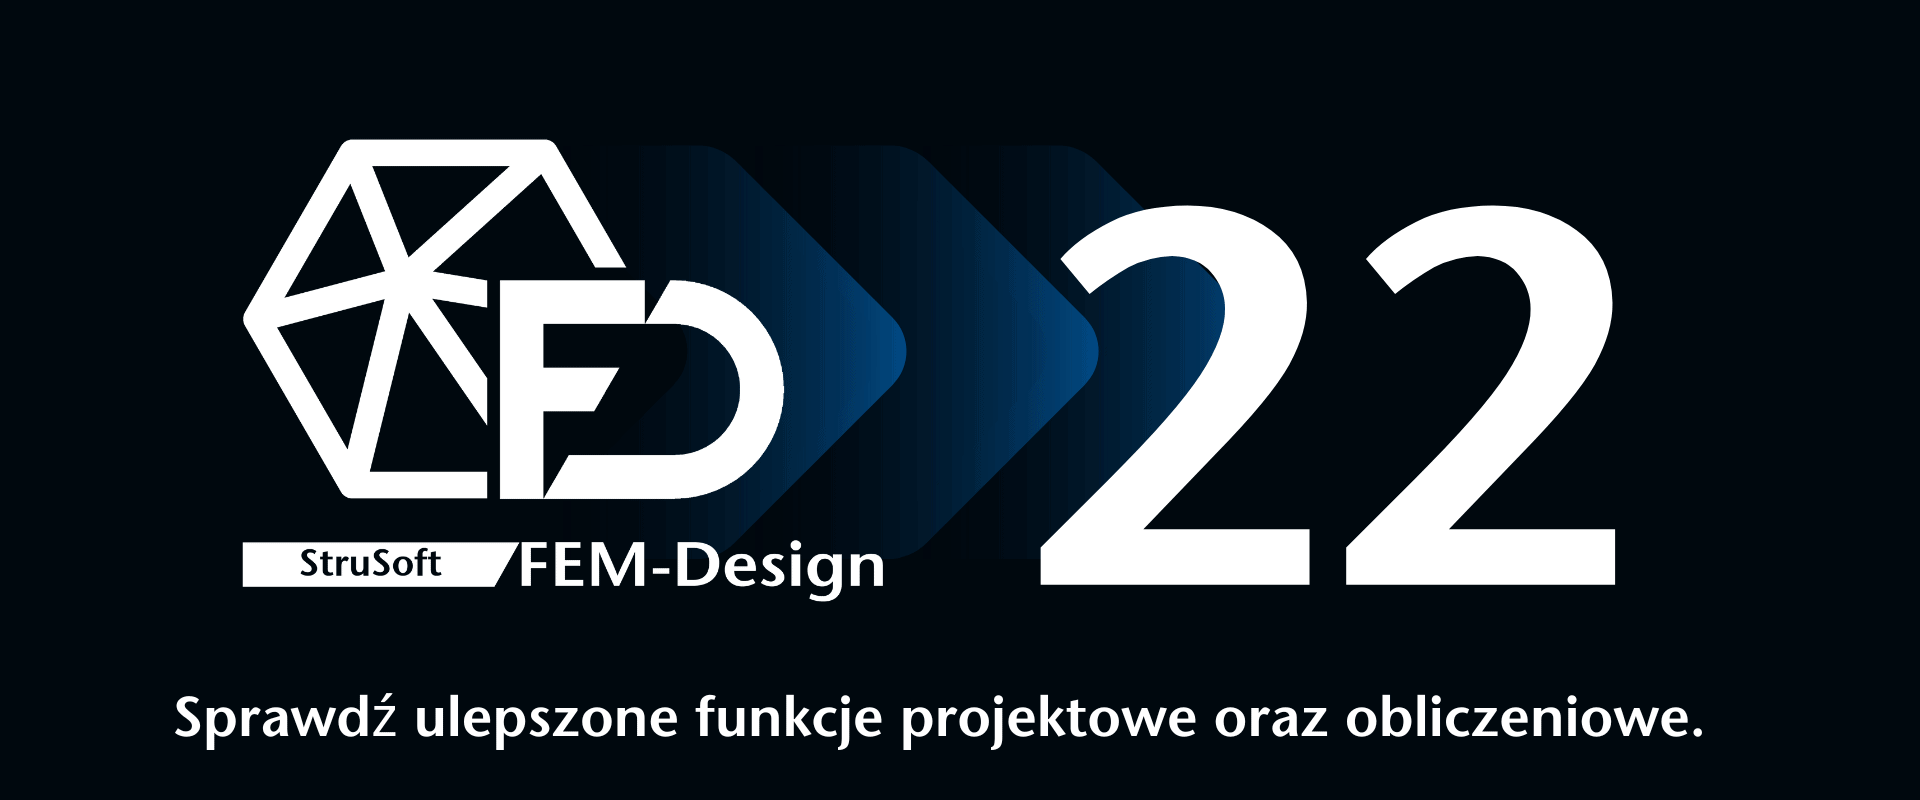 FEM-Design 22